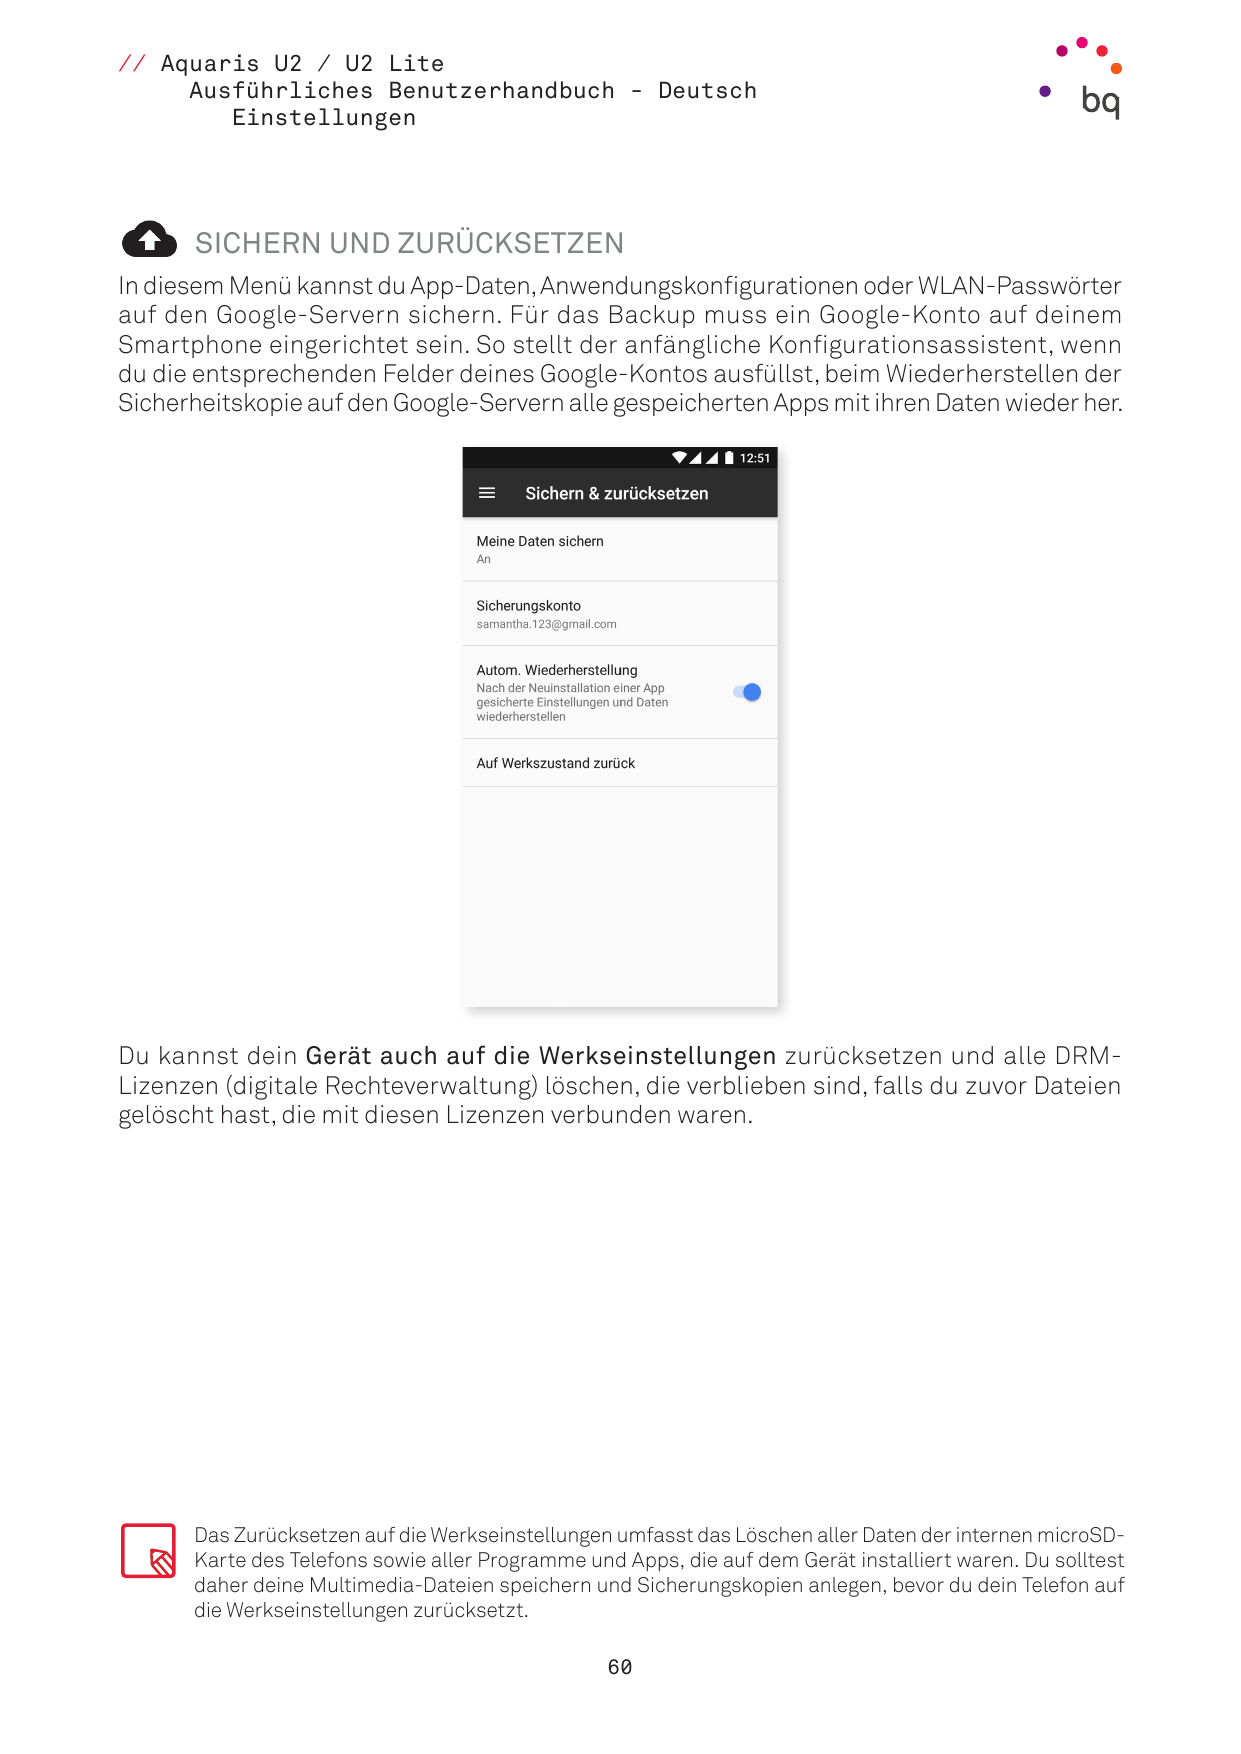 // Aquaris U2 / U2 LiteAusführliches Benutzerhandbuch - DeutschEinstellungenSICHERN UND ZURÜCKSETZENIn diesem Menü kannst du App